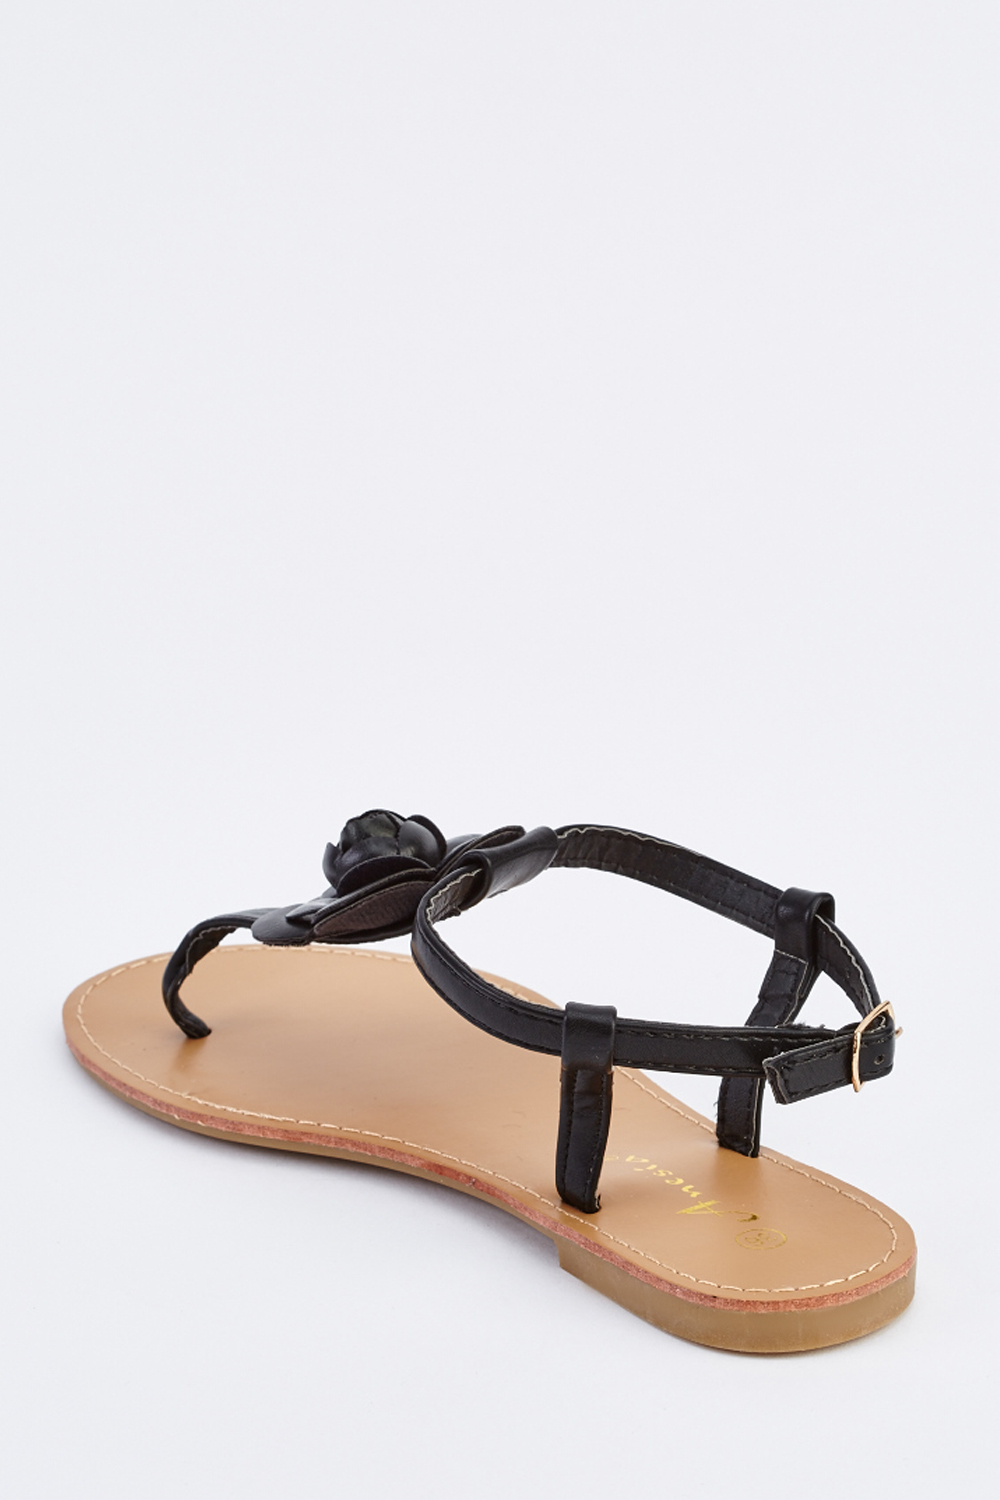 3D Faux Leather Sandals - Just $7